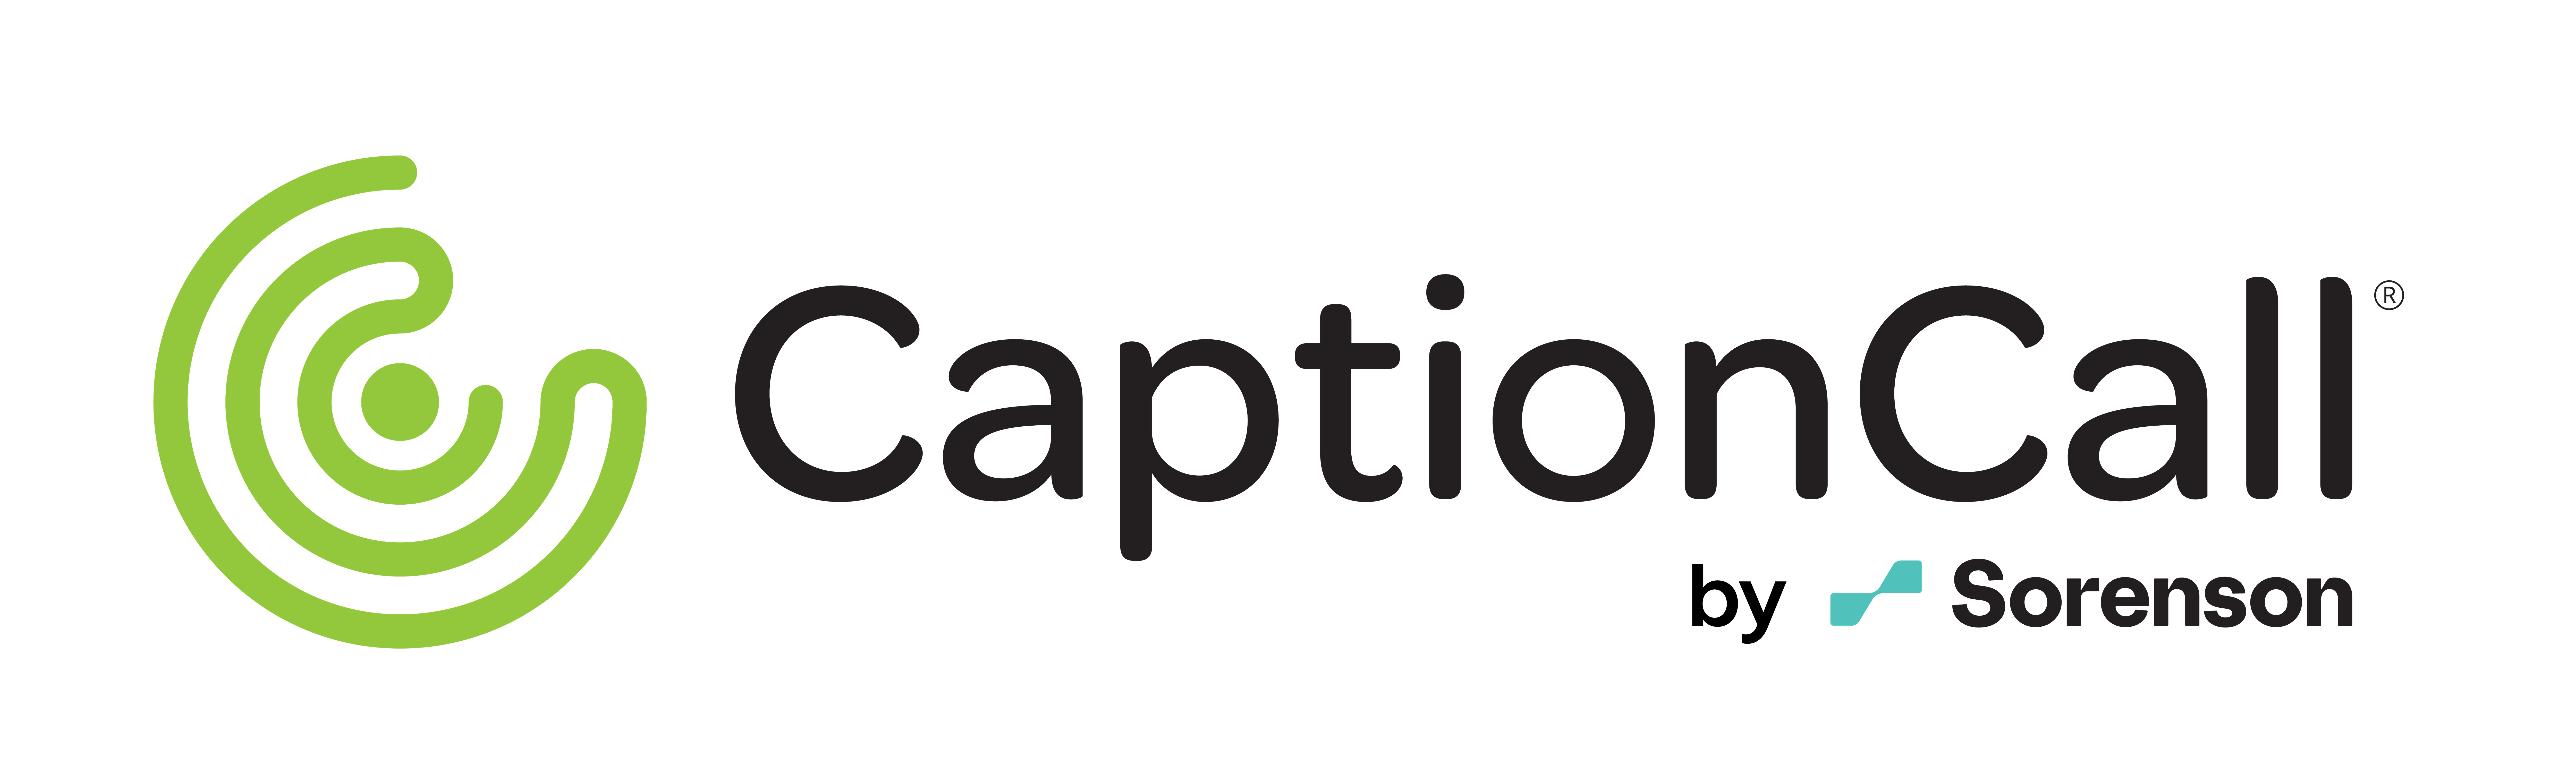 CaptionCall logo